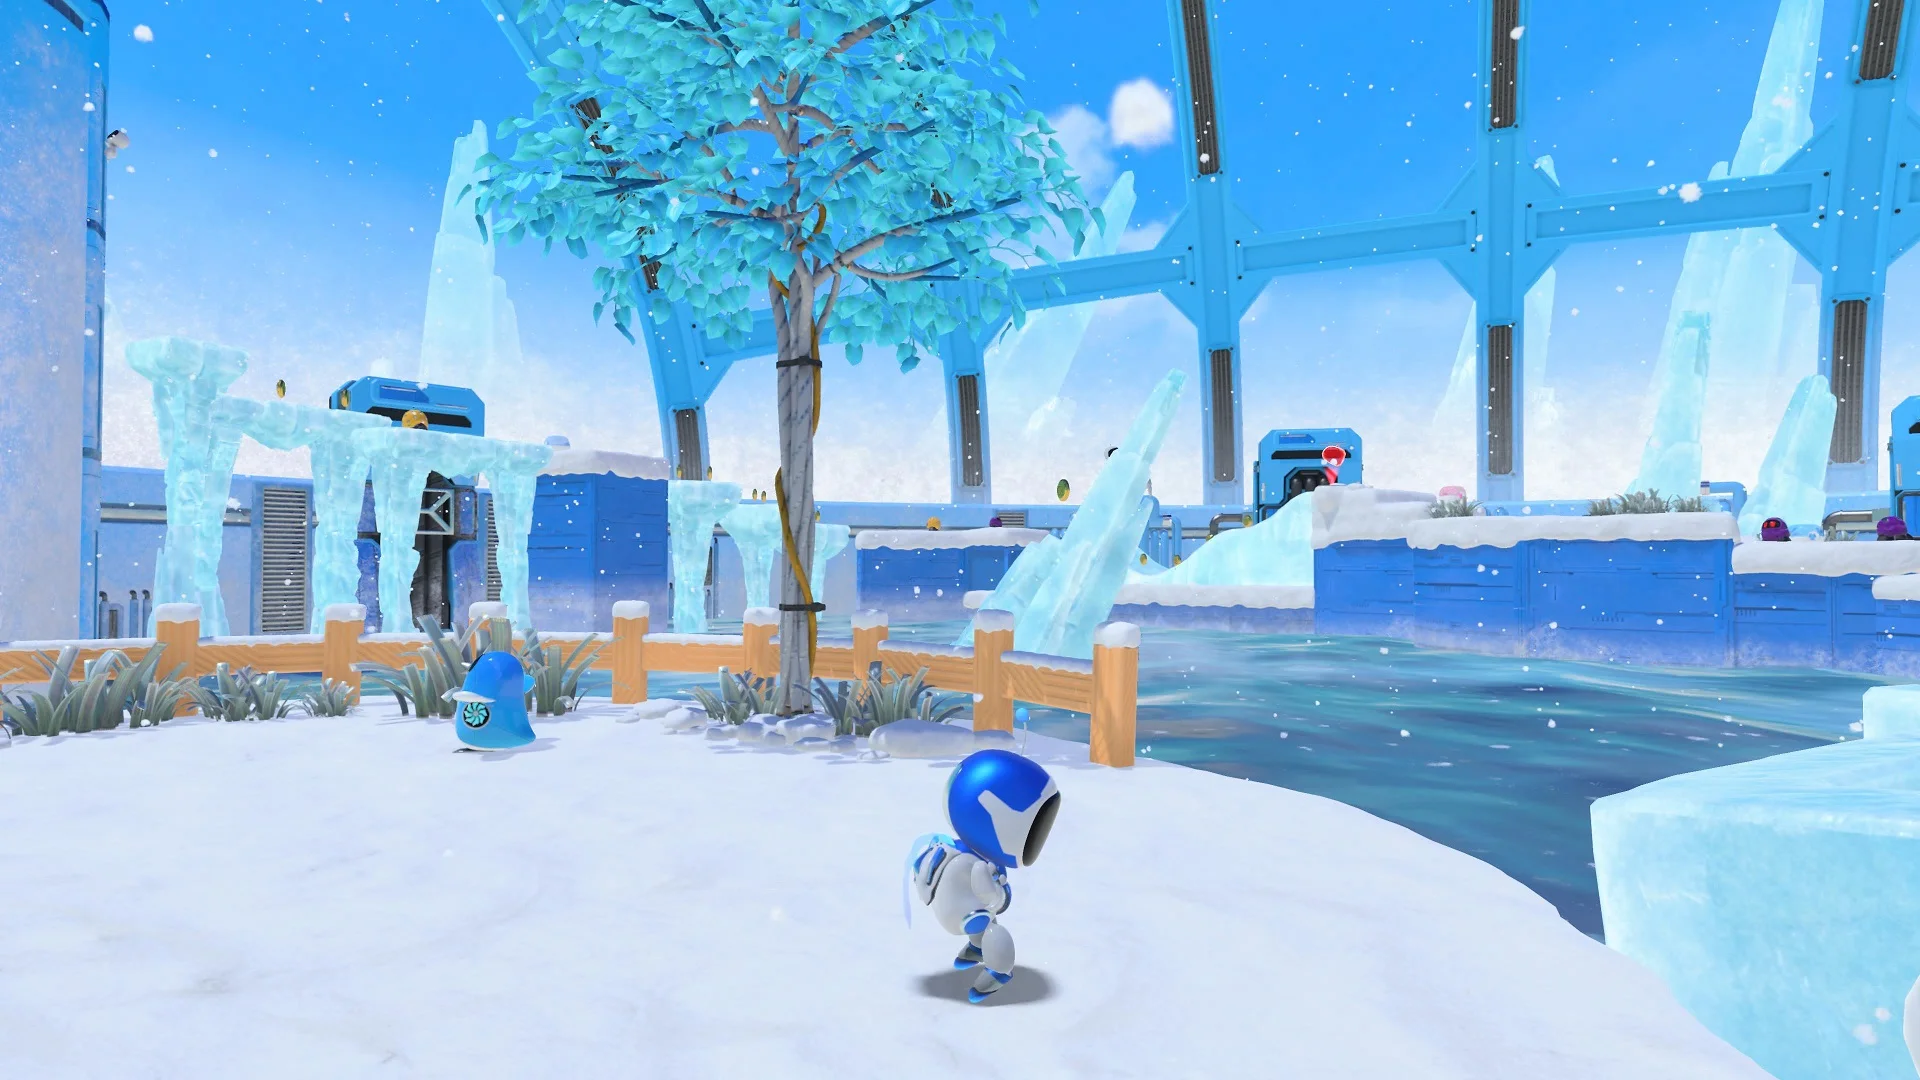 Галерея. 40 скриншотов из главных некстген-игр для PlayStation 5 - фото 7